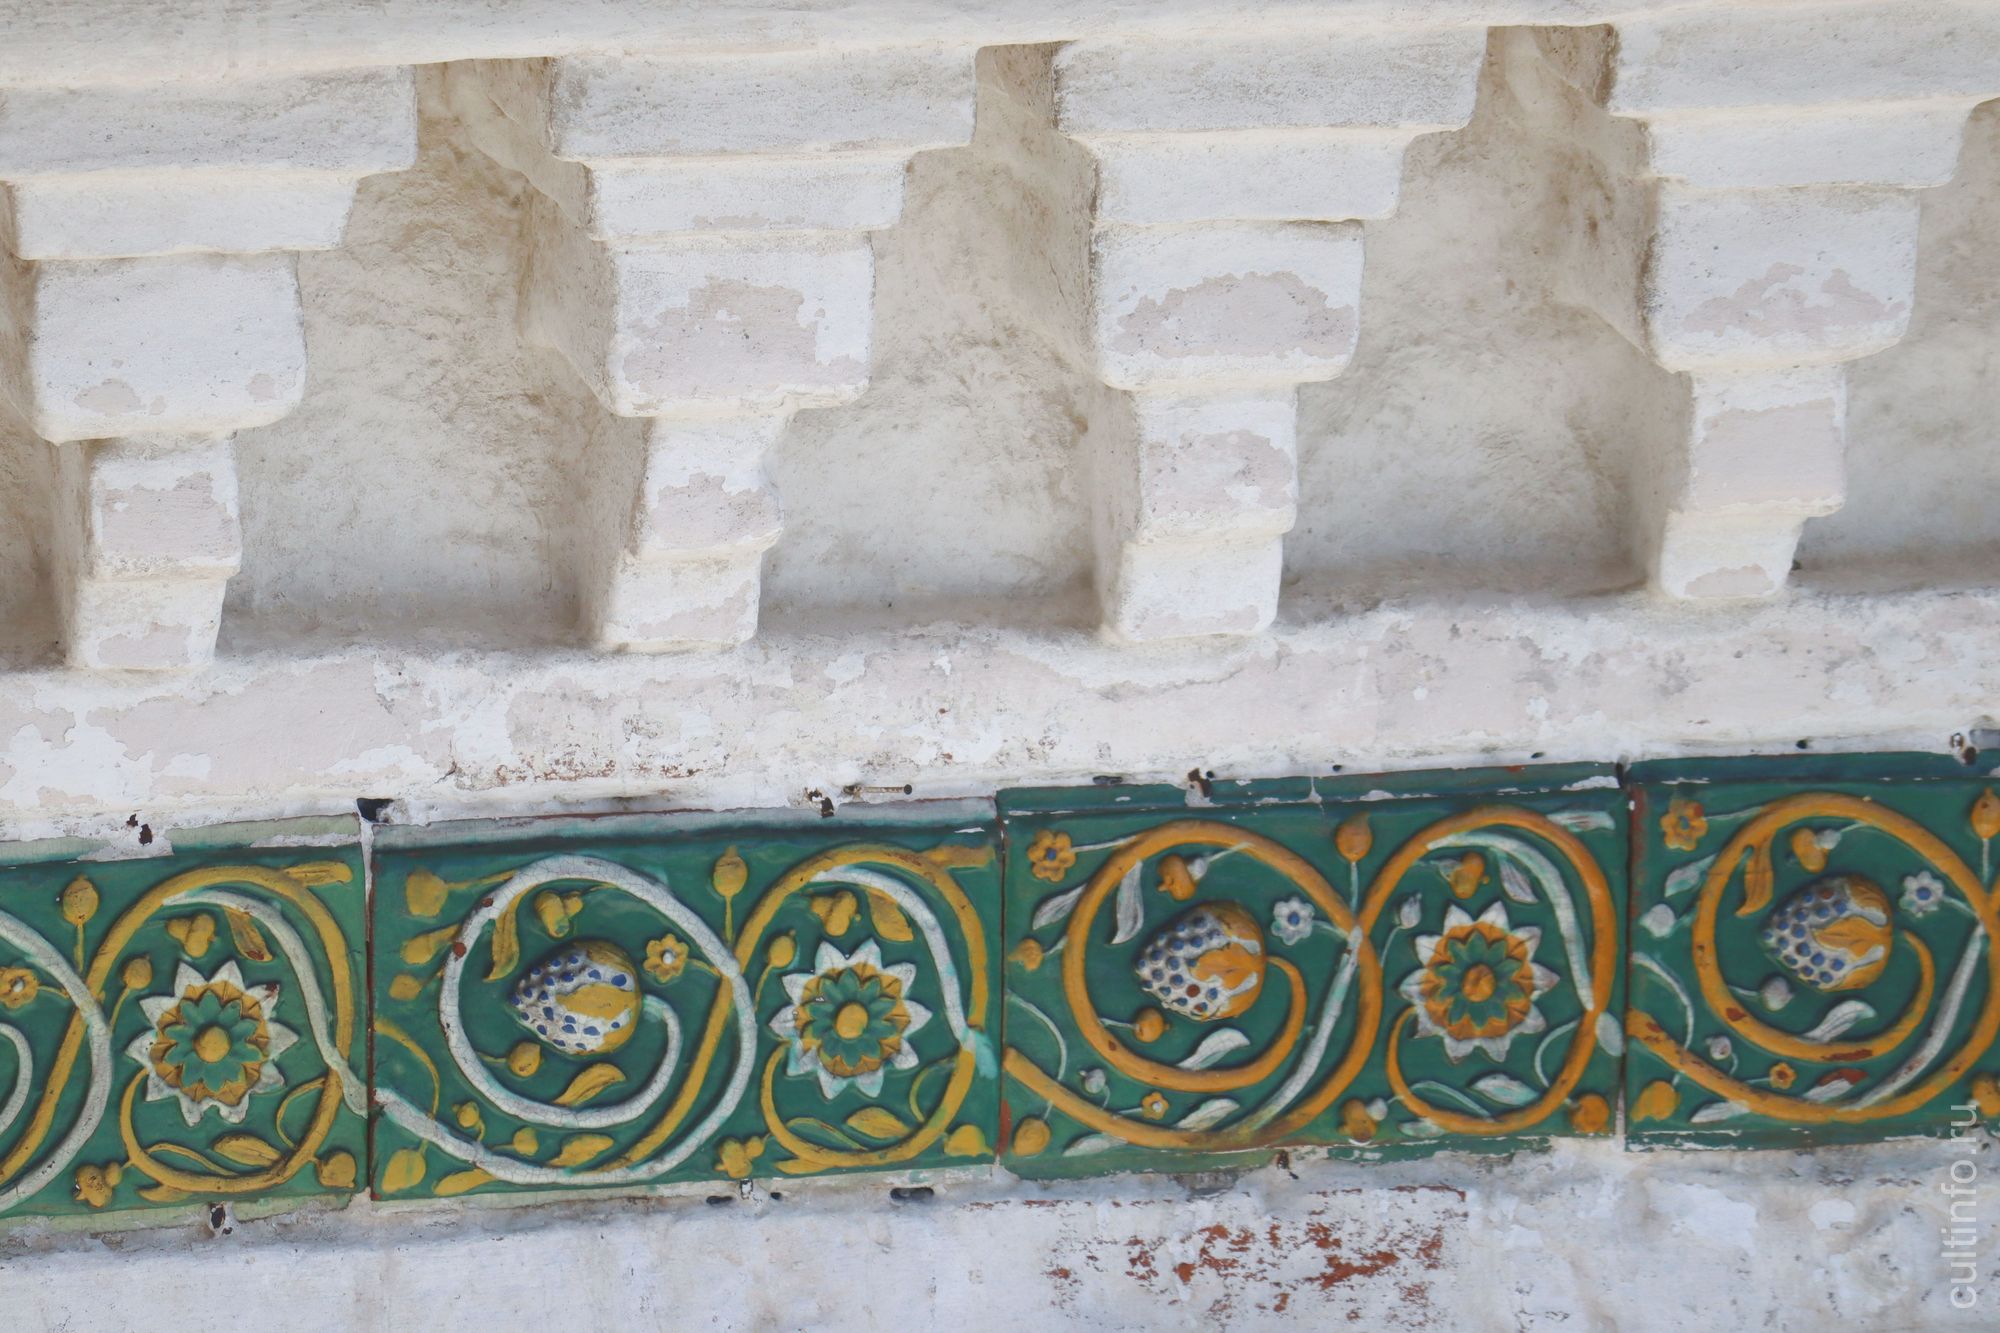 Фасад храма украшен зелеными изразцами с растительным орнаментом, что является редкостью для Вологды. 